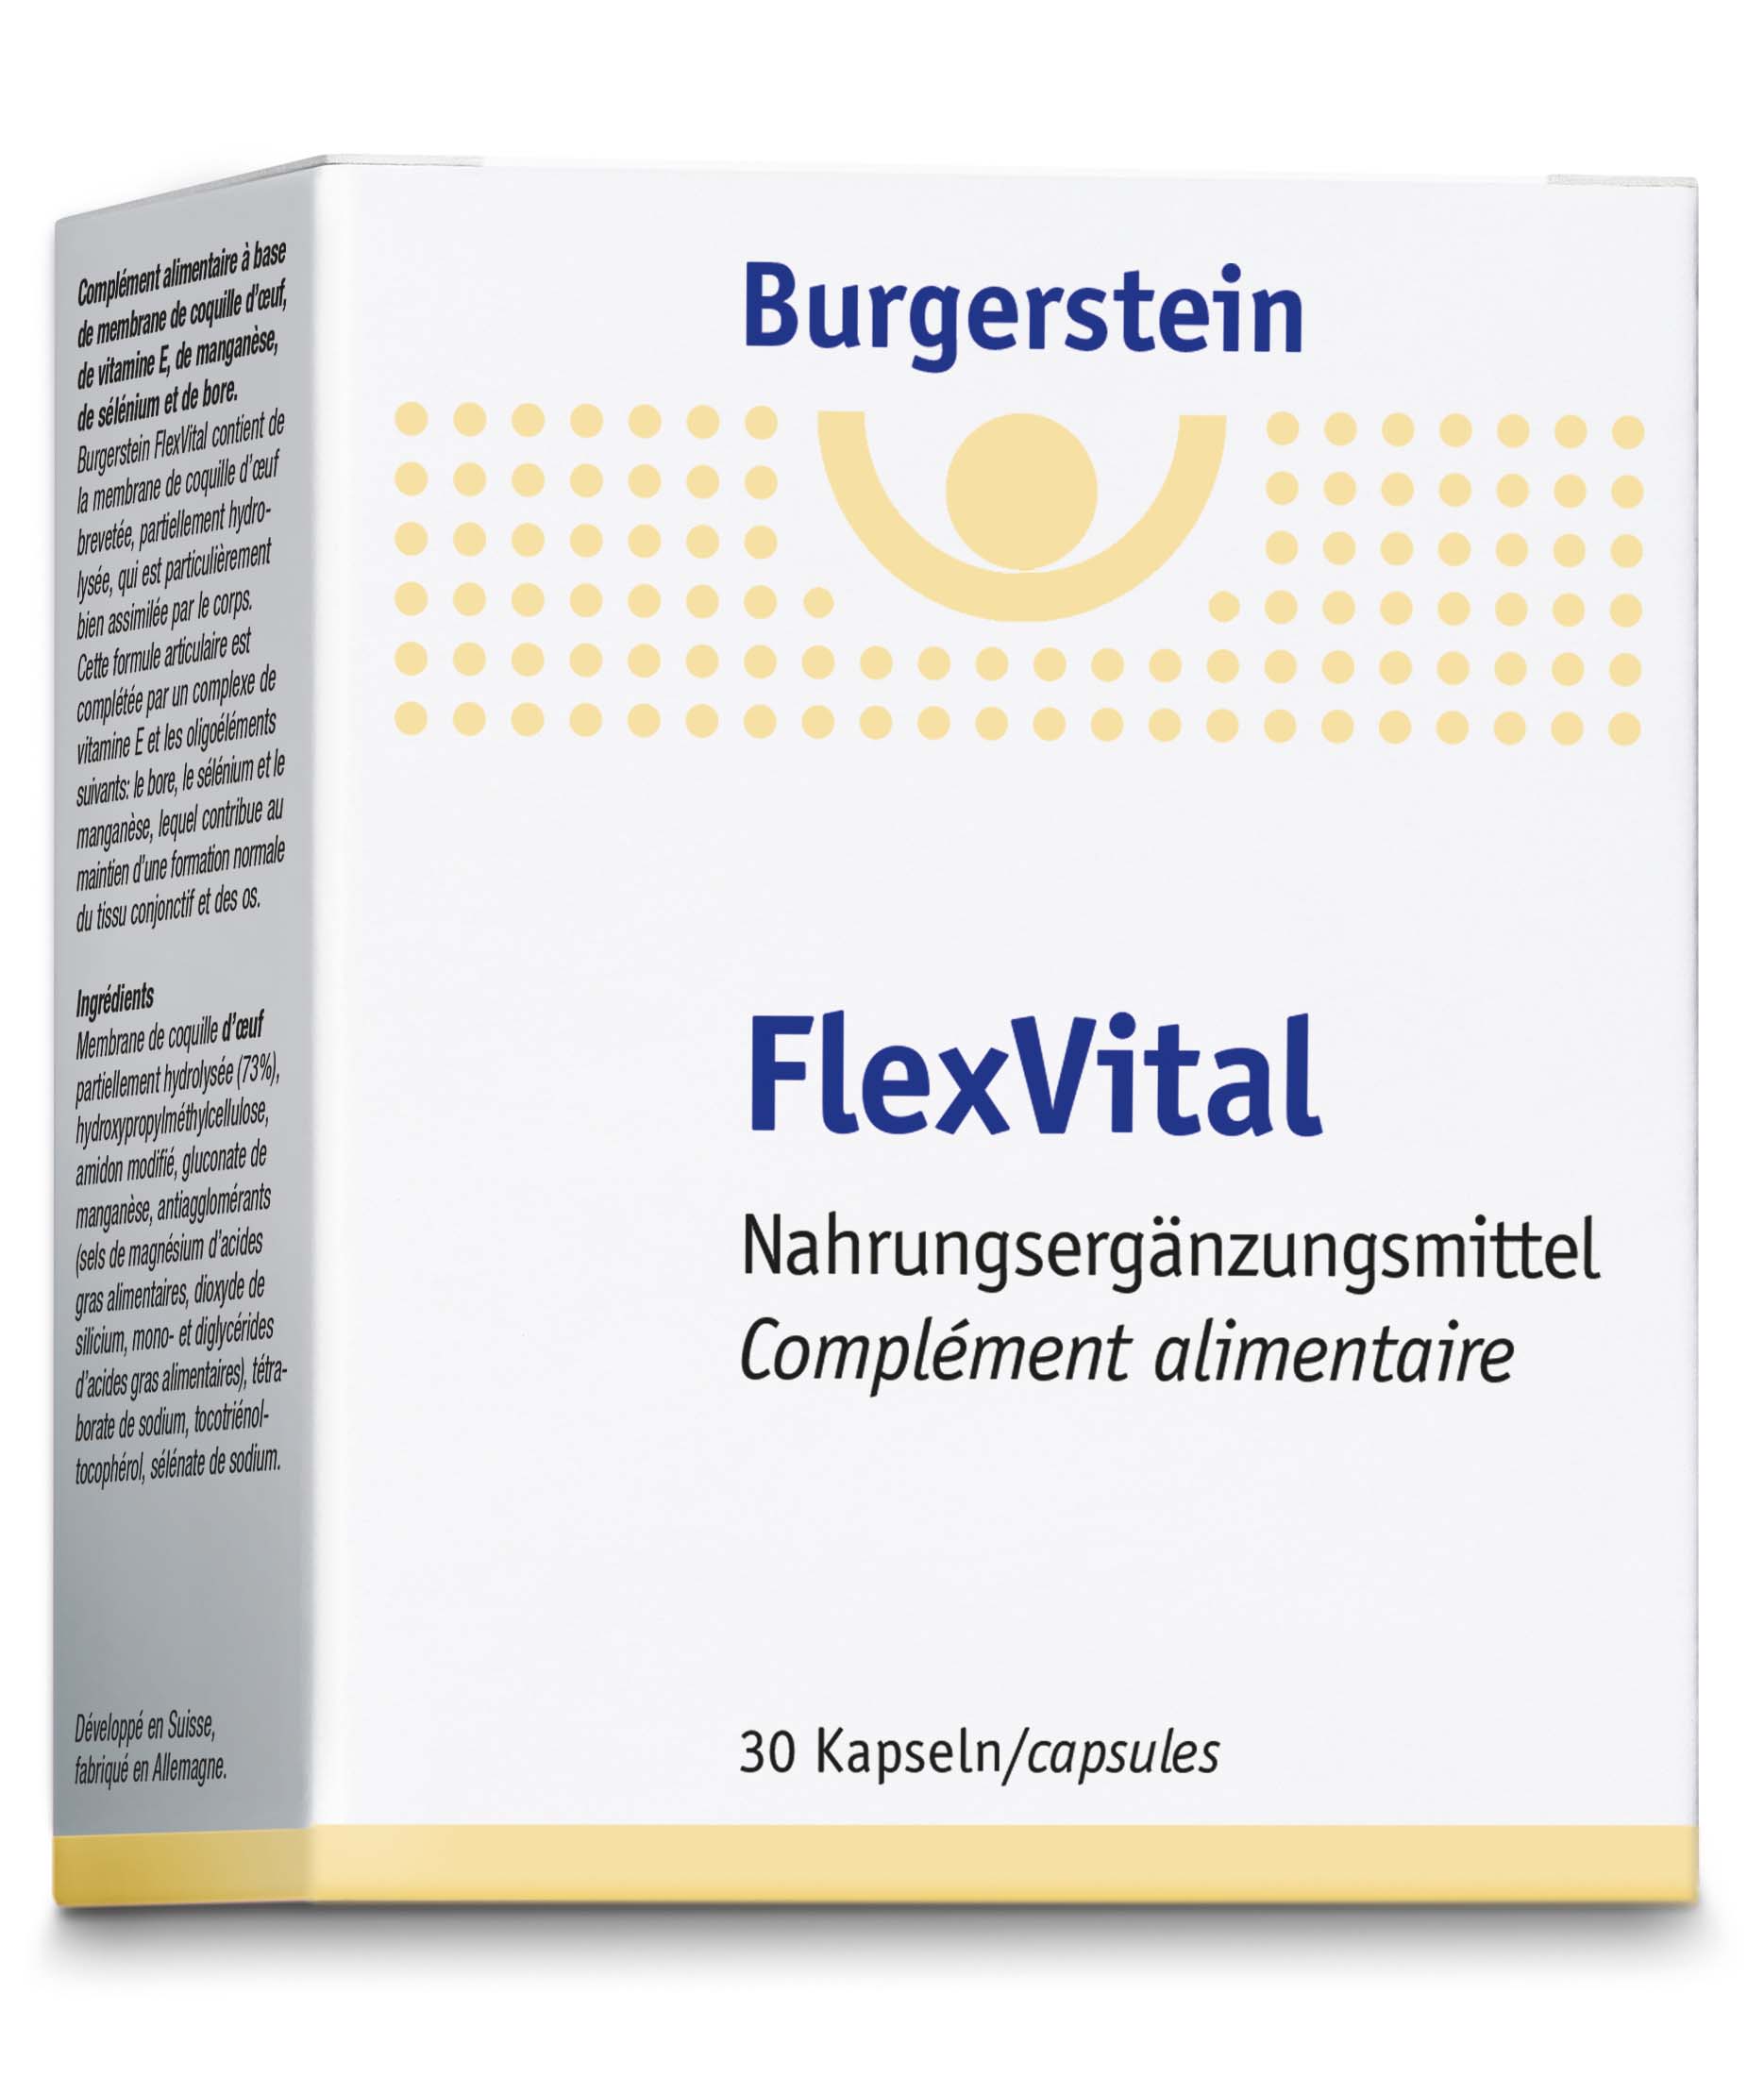 BURGERSTEIN FlexVital, image principale